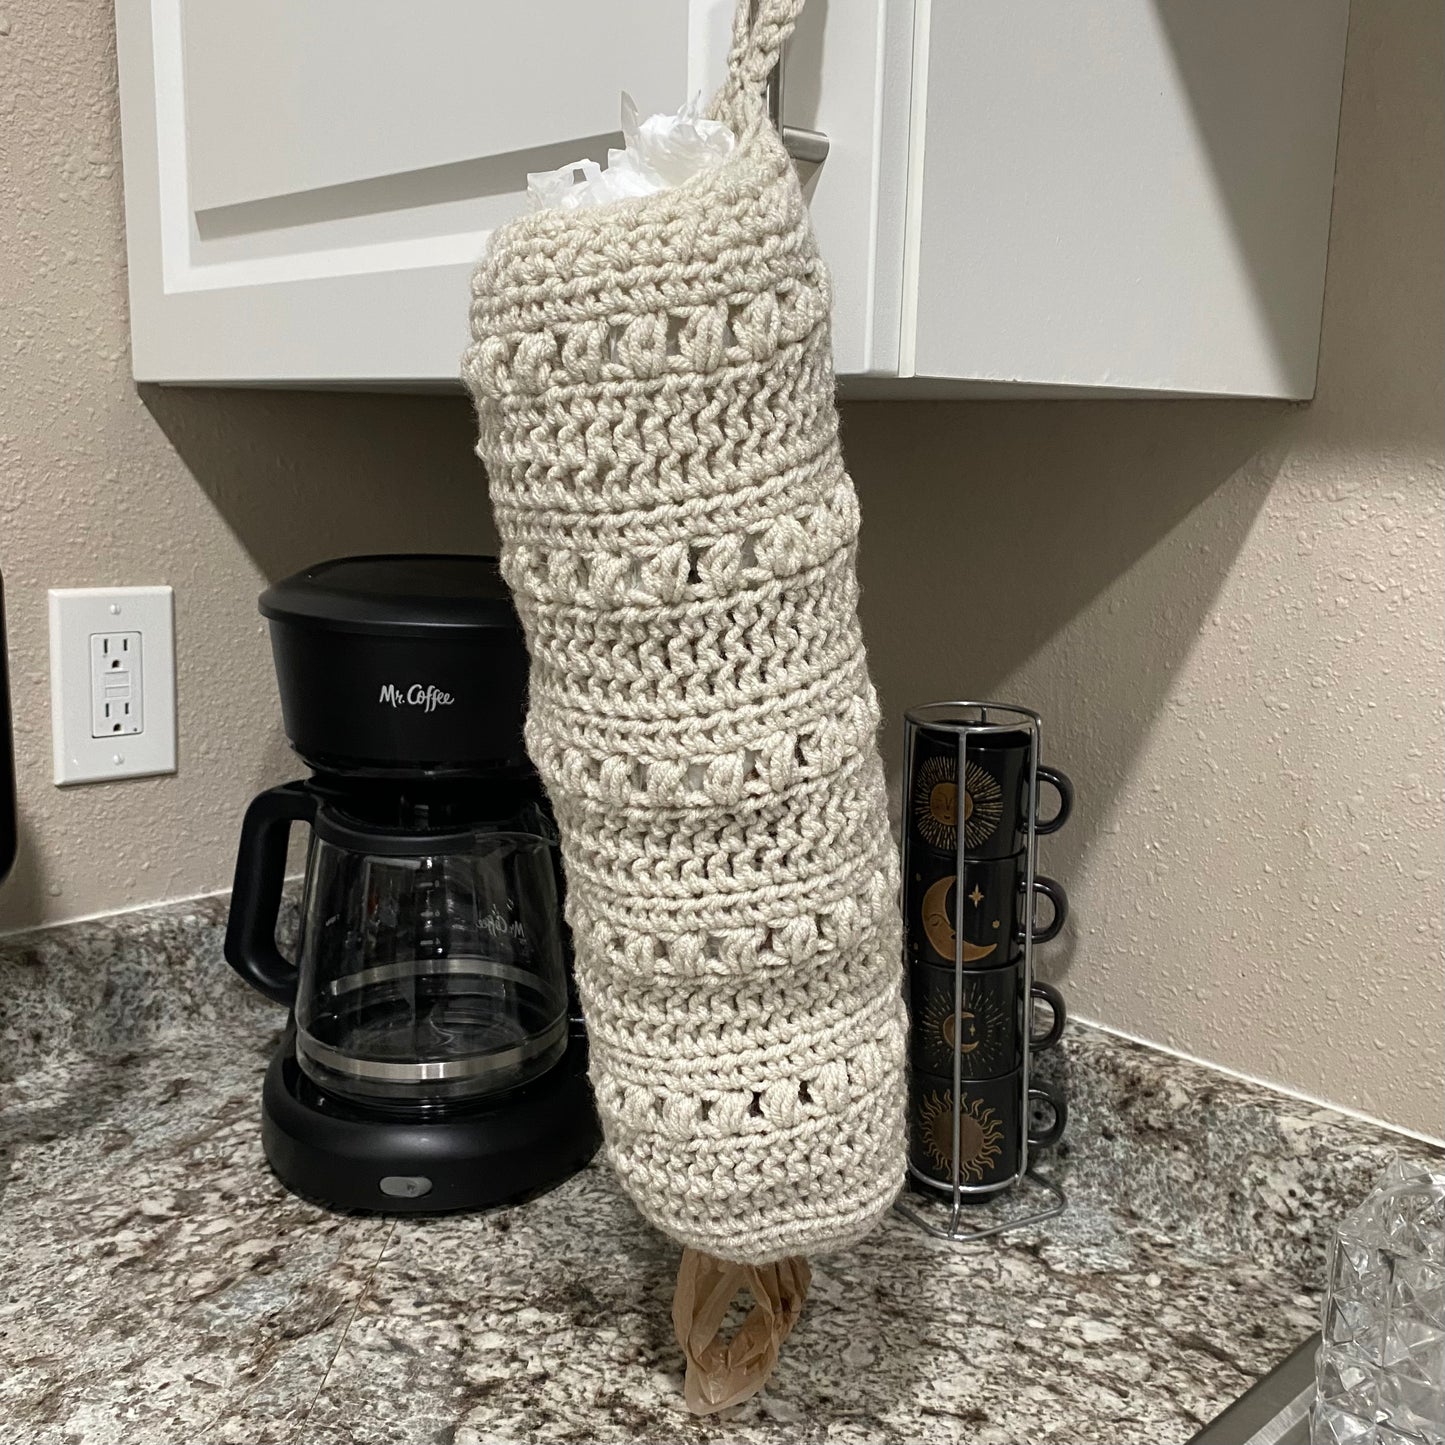 Crochet Plastic Bag Holder - Made to Order